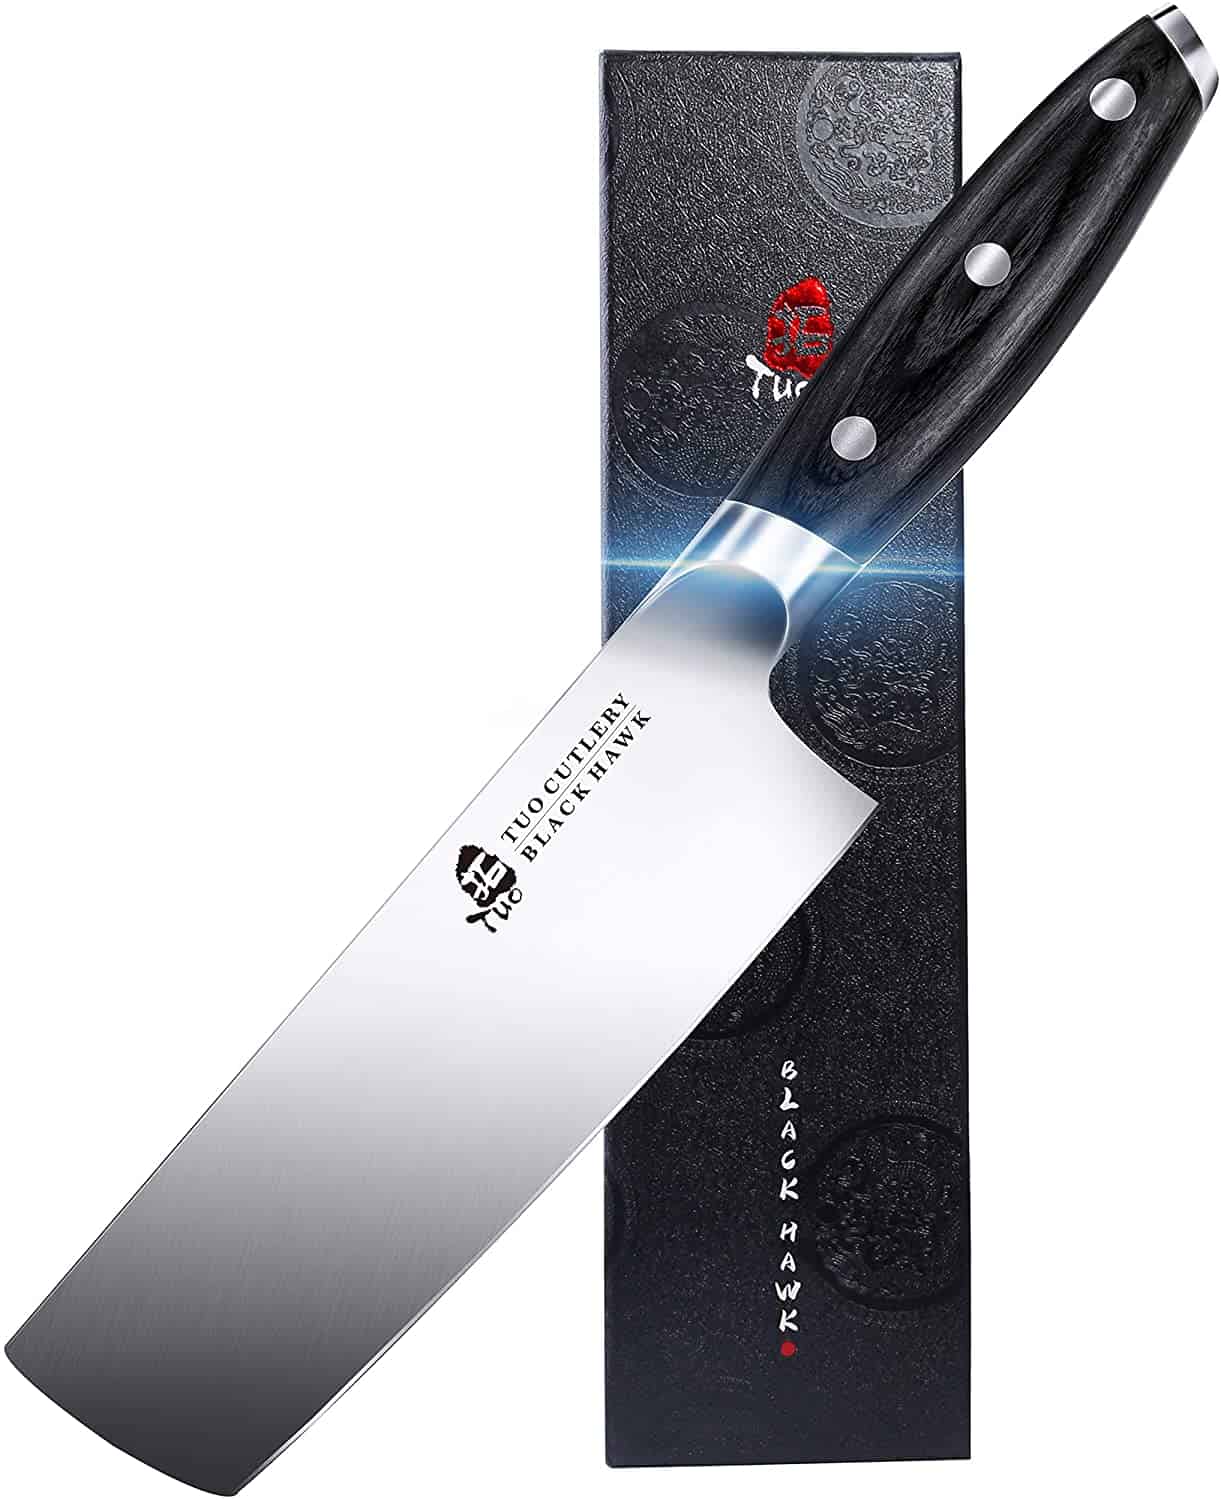 Bästa grönsakskniven (Usuba-bocho) - TUO Nakiri Knife 6.5 tum